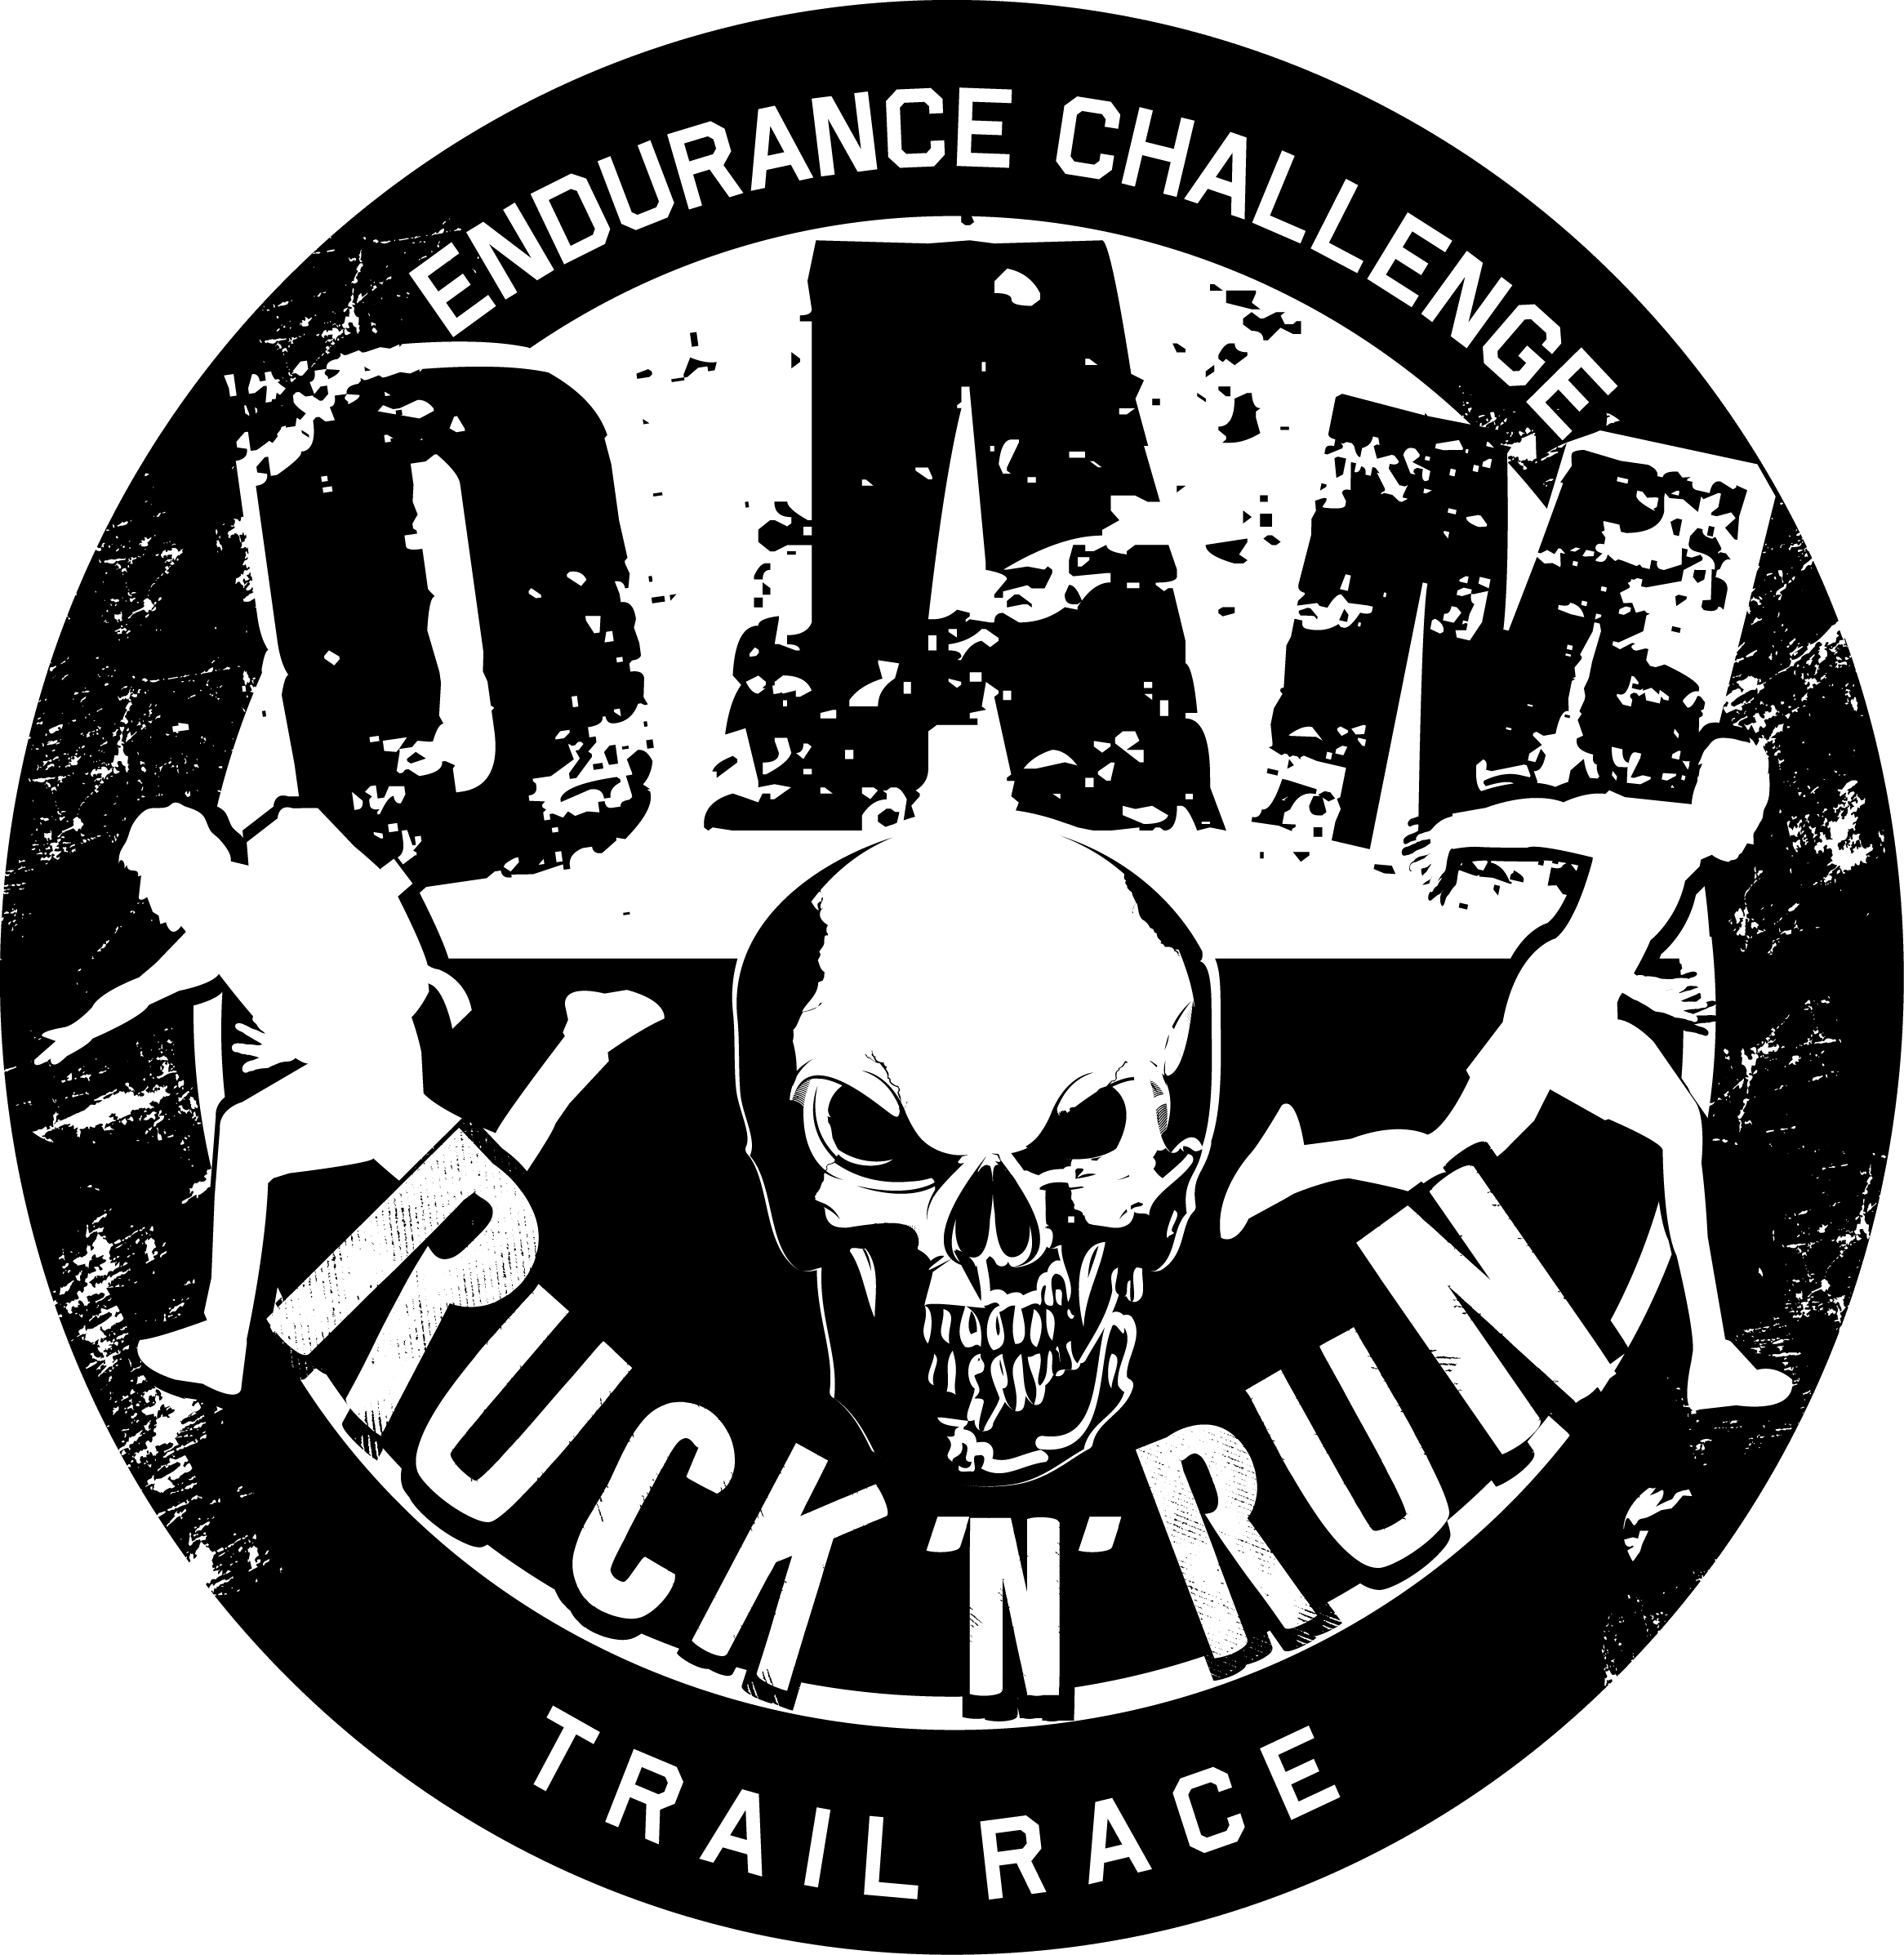 Dam Ruck ‘N’ Run logo on RaceRaves